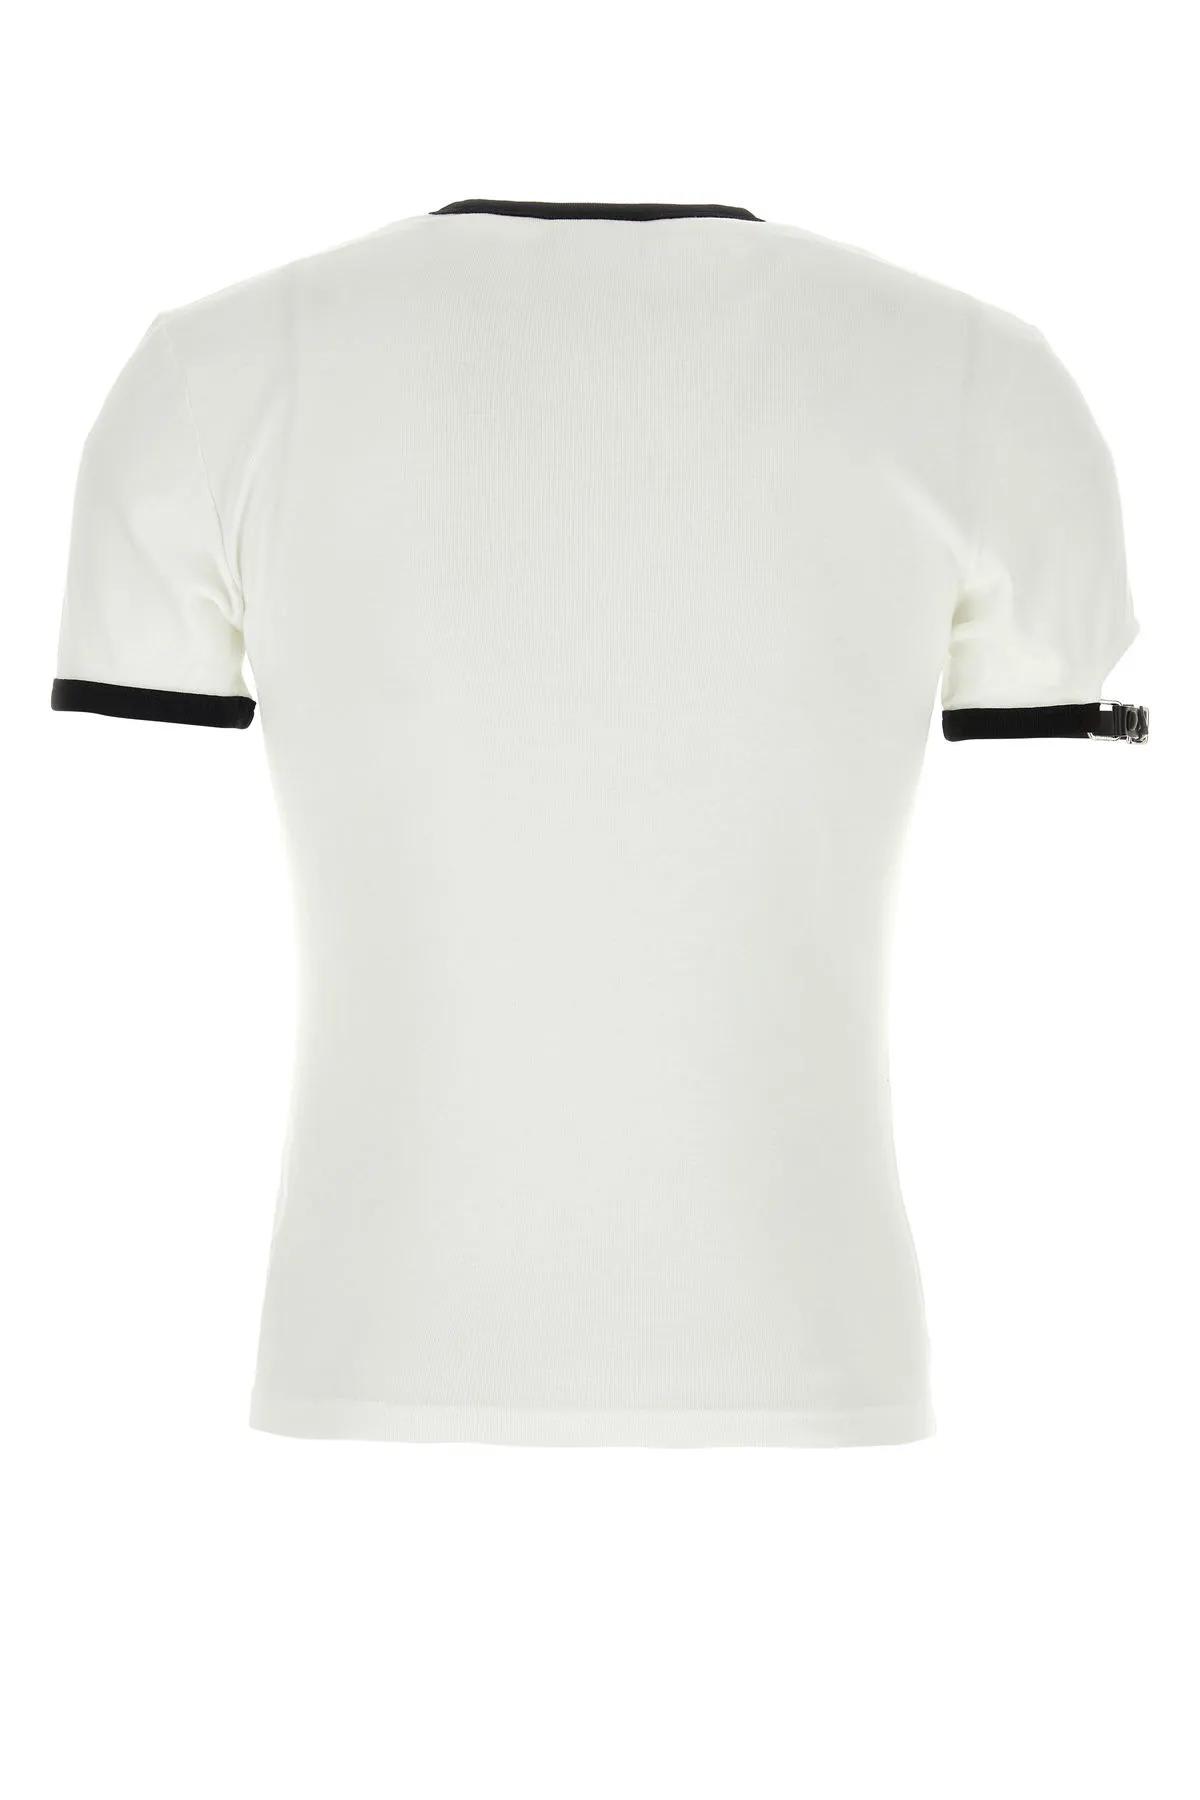 Shop Courrèges White Cotton T-shirt In White/black